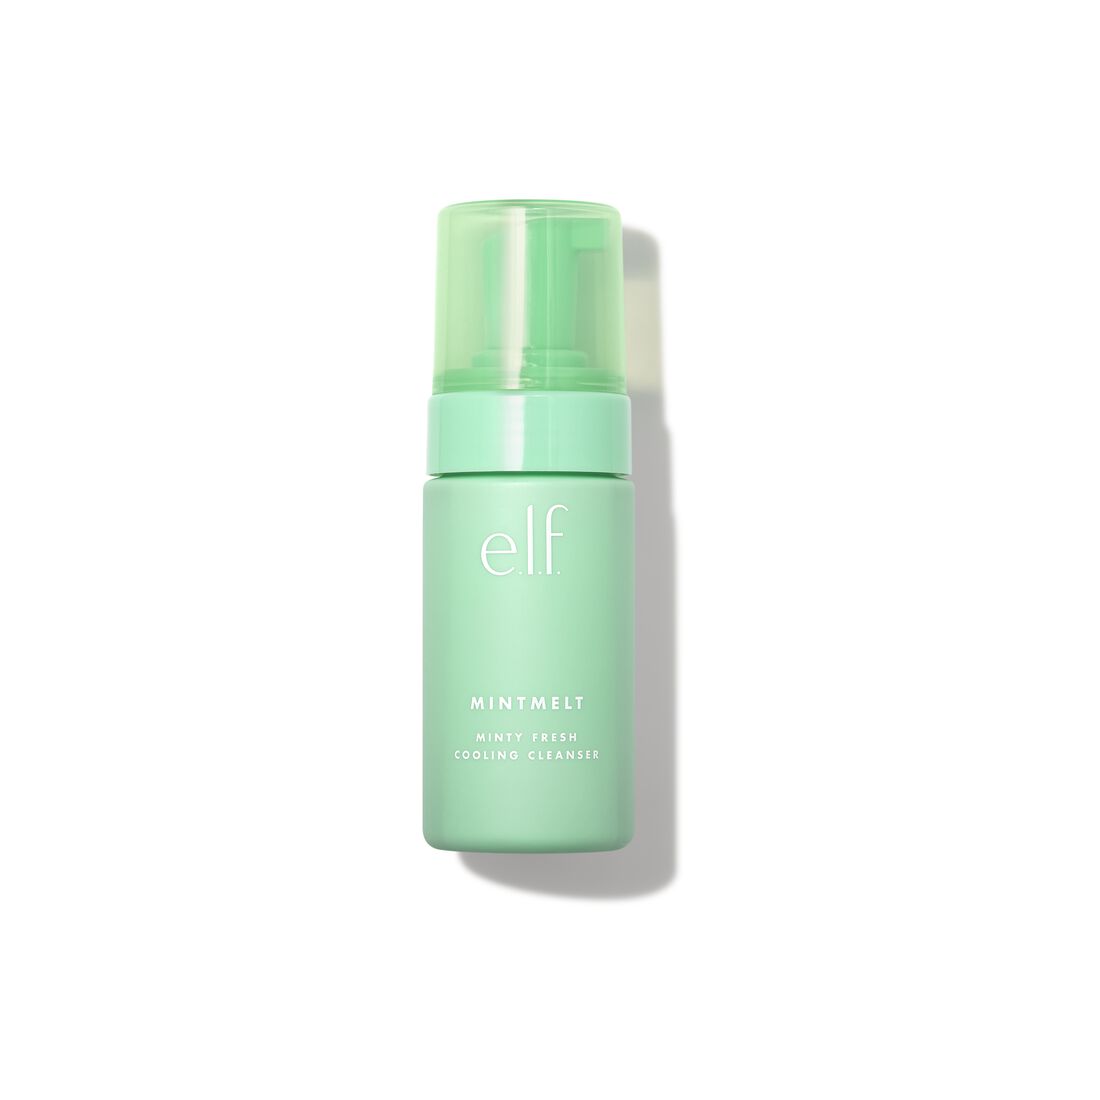 e.l.f. Cosmetics - Mint Melt Minty Fresh Cooling Cleanser